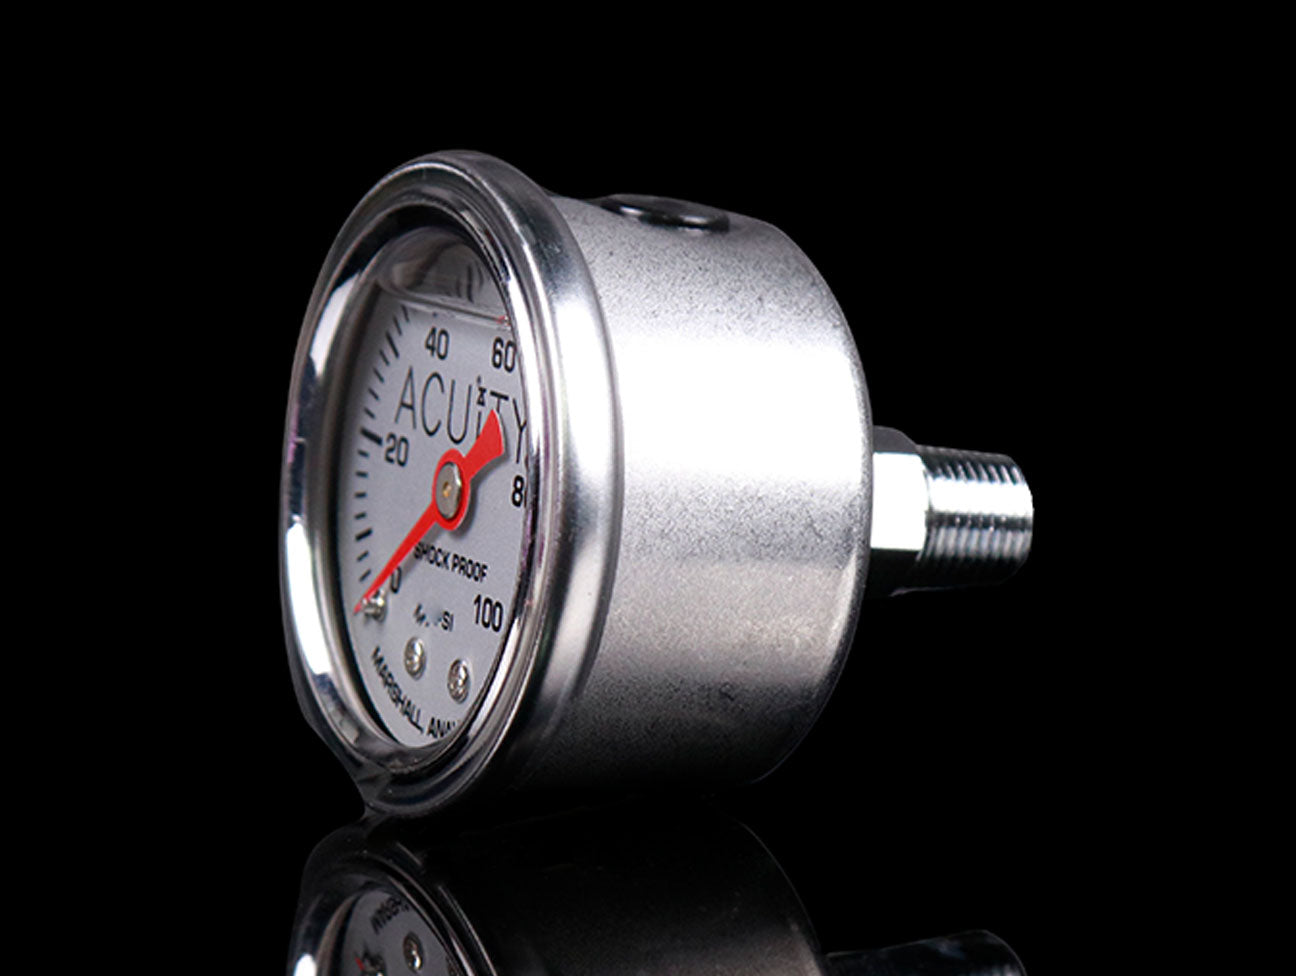 ACUiTY 100 PSI Fuel Pressure Gauge